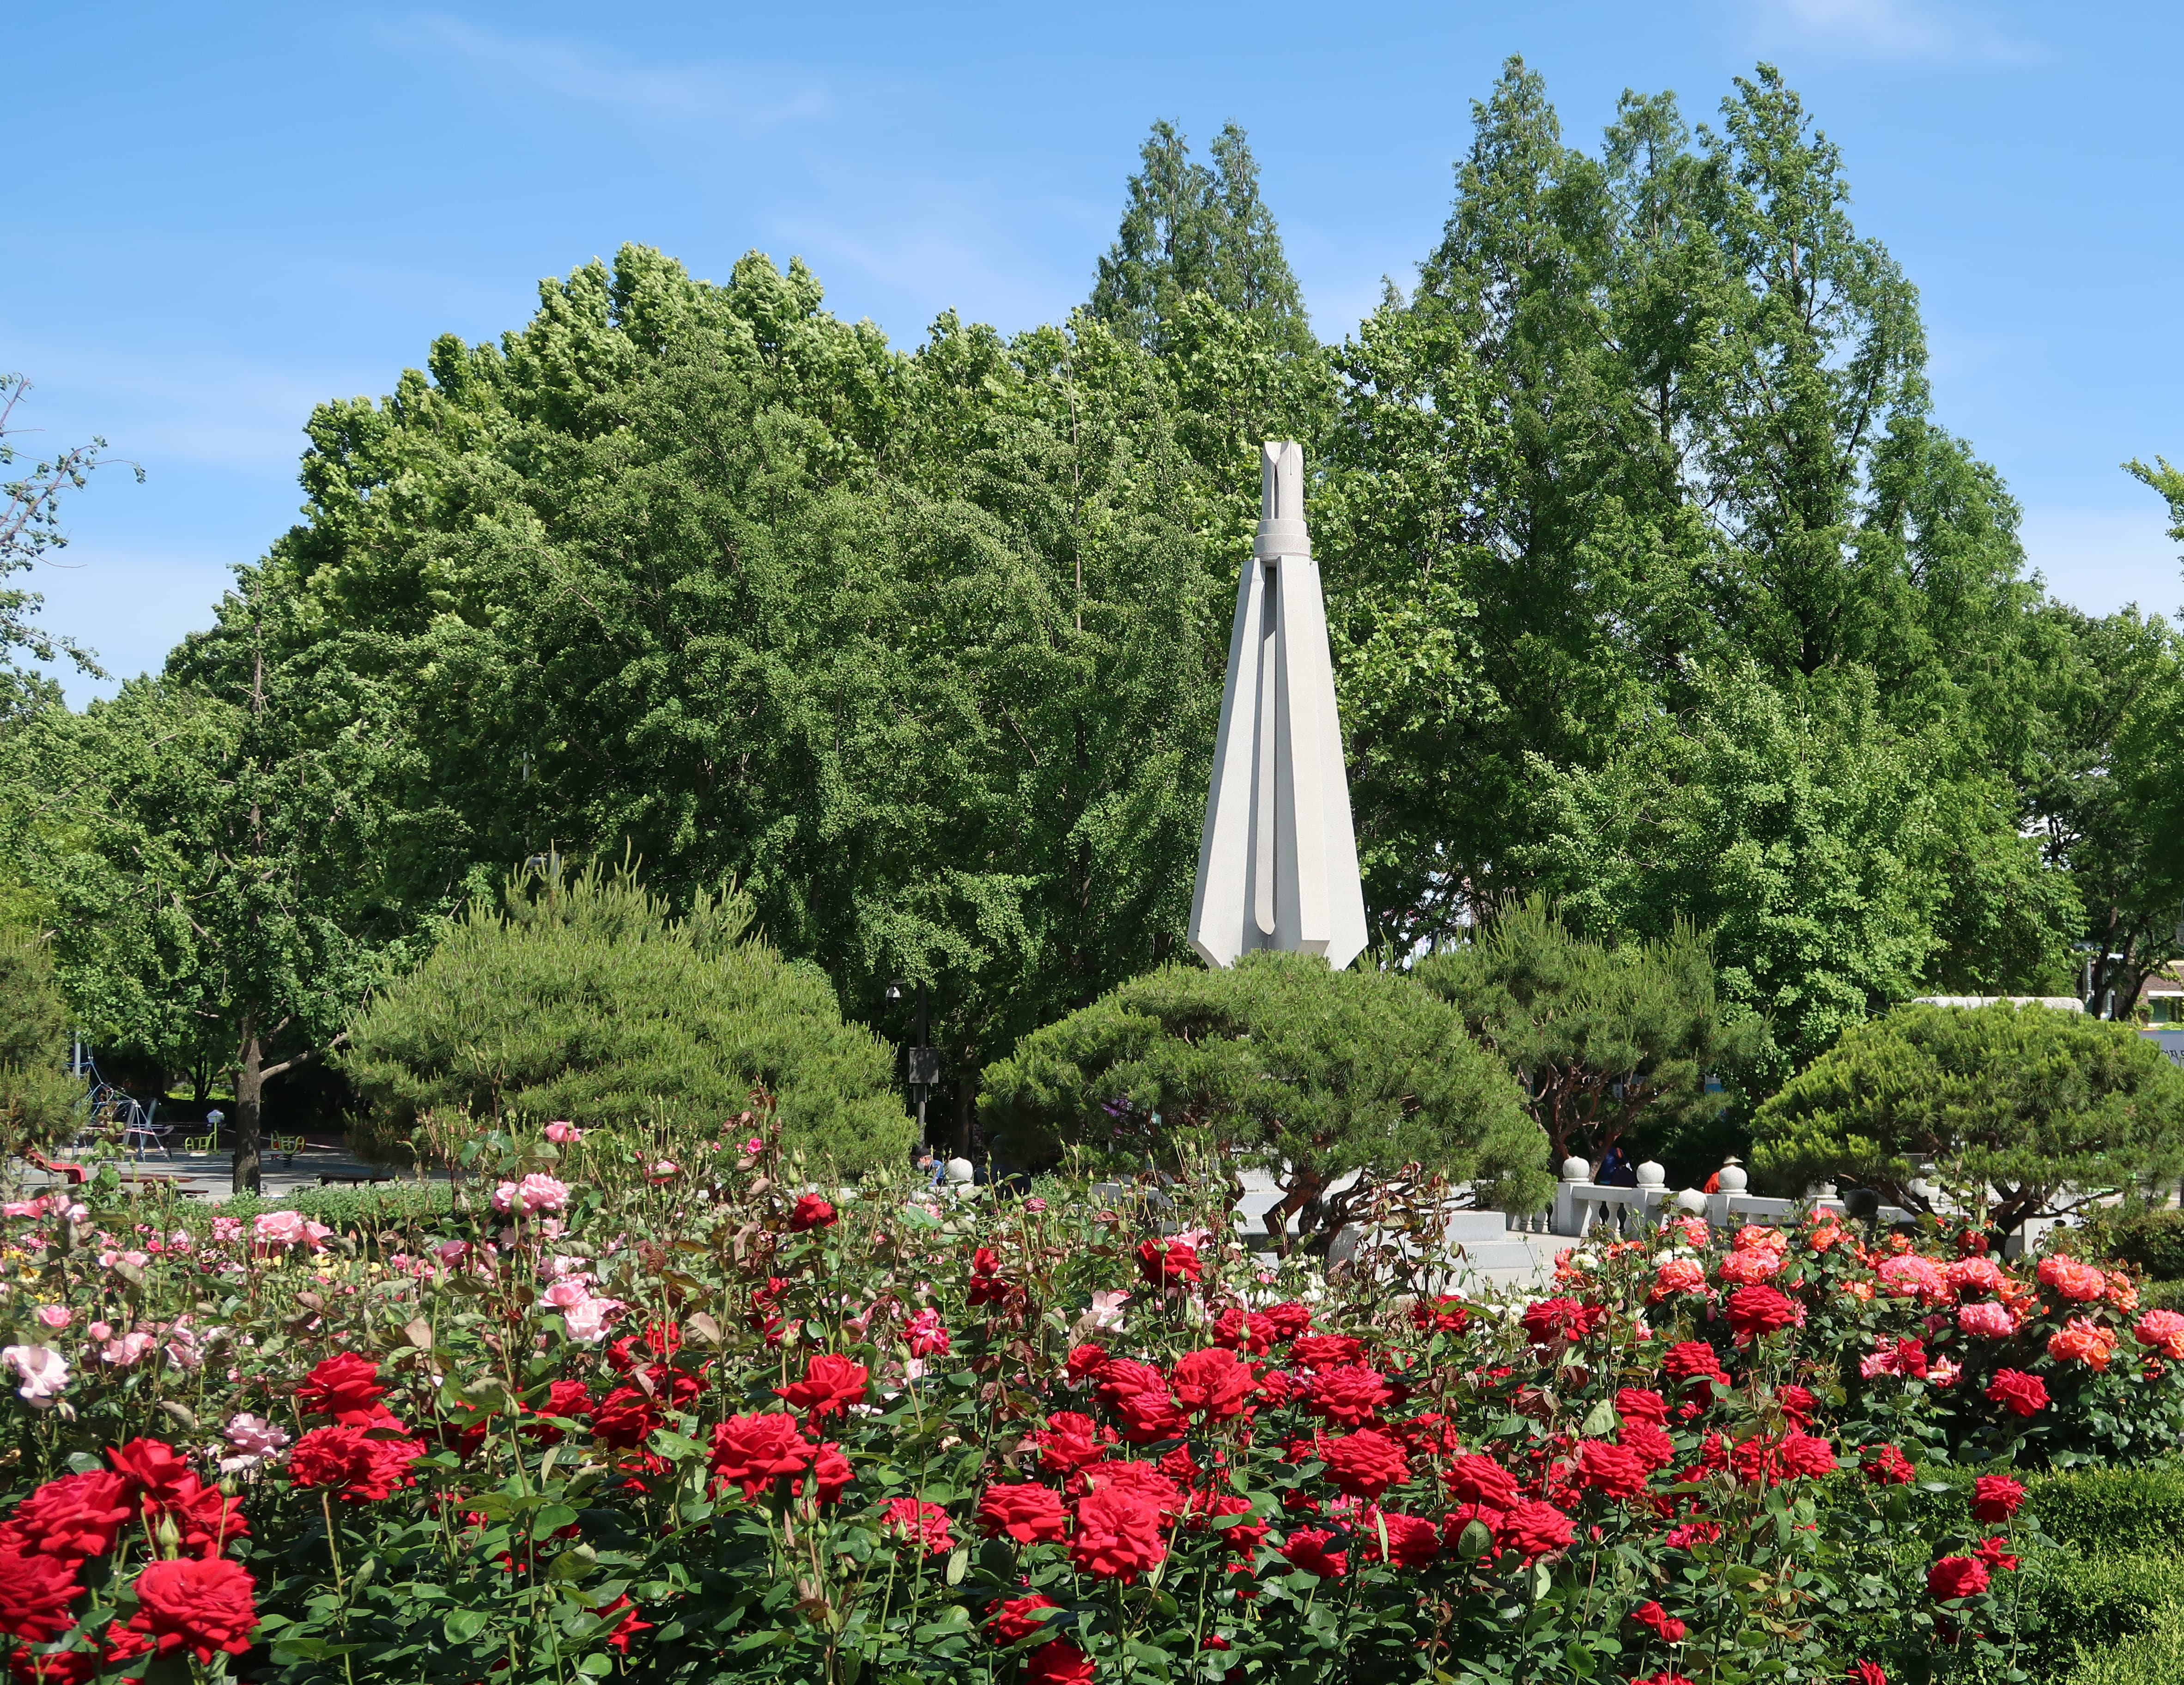 보라매공원5 : 장미꽃과 나무들이 풍성한 보라매공원 입구 전경